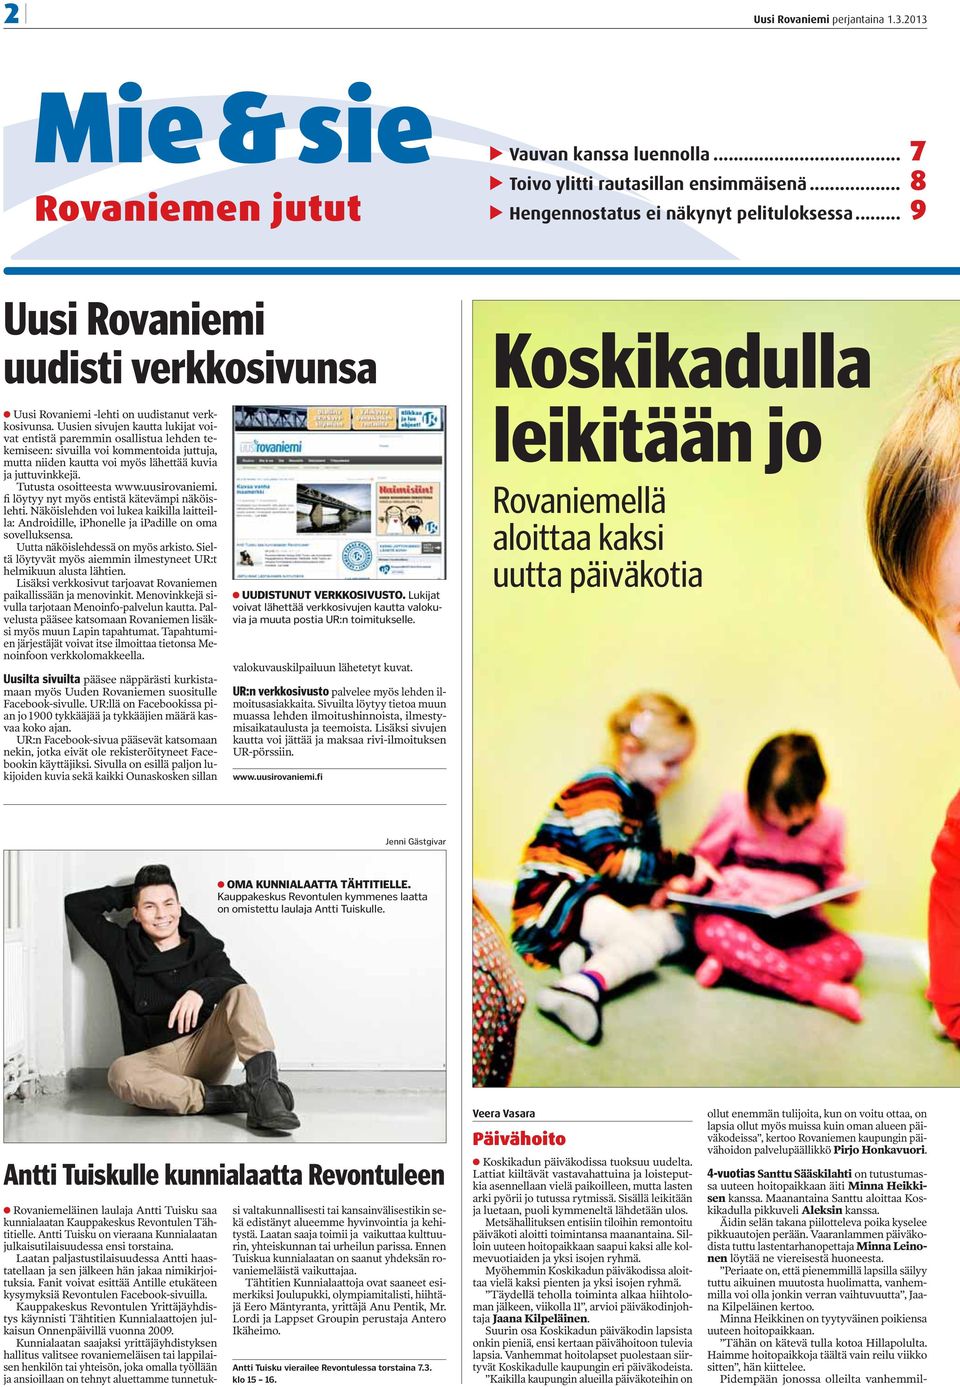 Tutusta osoitteesta www.uusirovaniemi. fi löytyy nyt myös entistä kätevämpi näköislehti. Näköislehden voi lukea kaikilla laitteilla: Androidille, iphonelle ja ipadille on oma sovelluksensa.